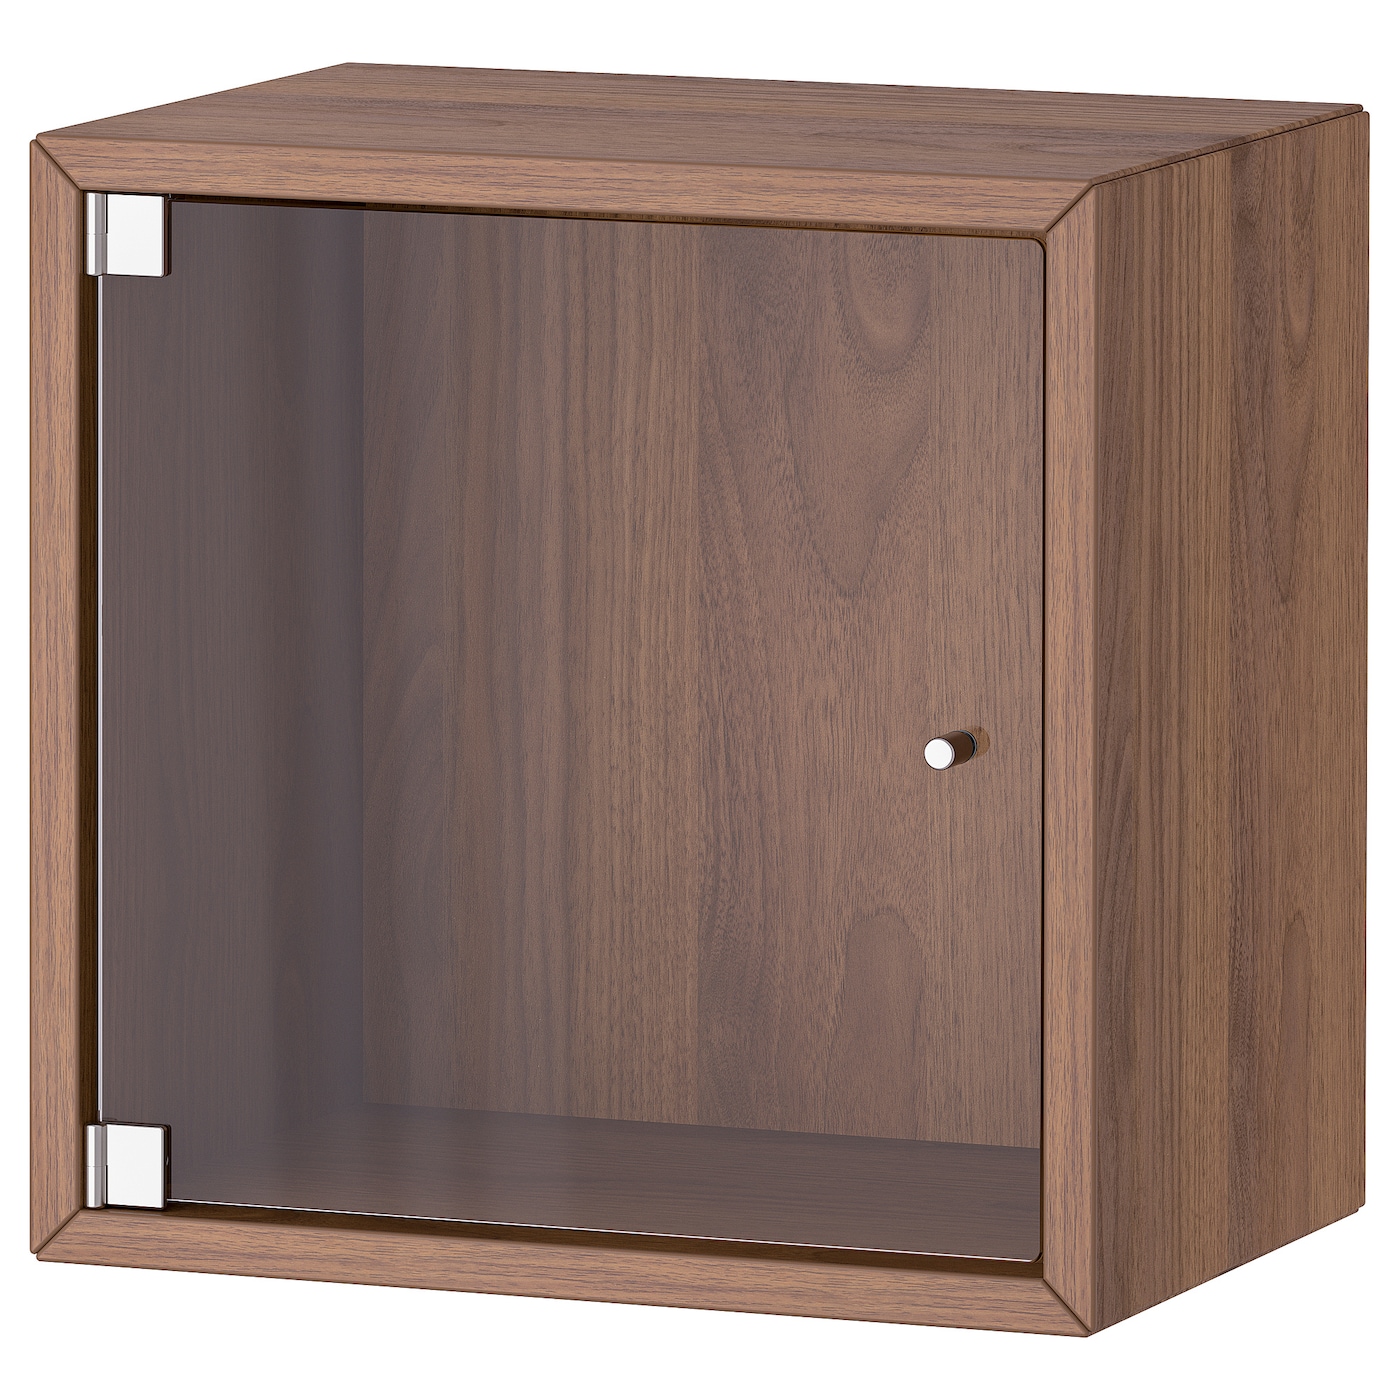 Навесной шкаф - IKEA EKET, 35x25x35 см, с эффектом коричневого ореха, ЭКЕТ ИКЕА